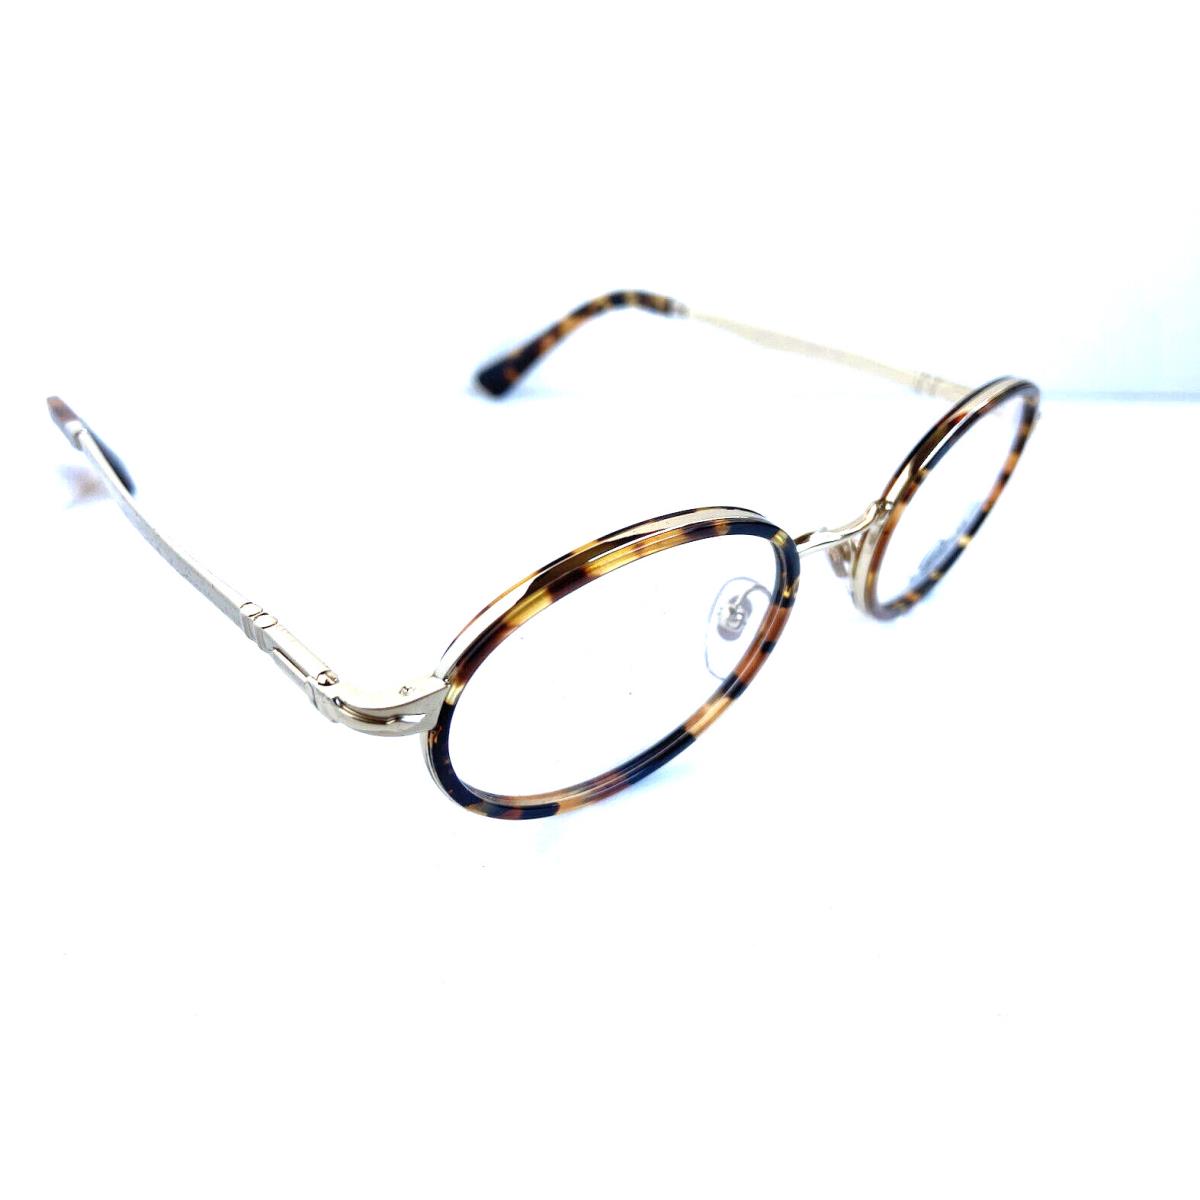 Persol 2452-V 1076 48mm Oval Tortoise Gold Men s Eyeglasses Frame